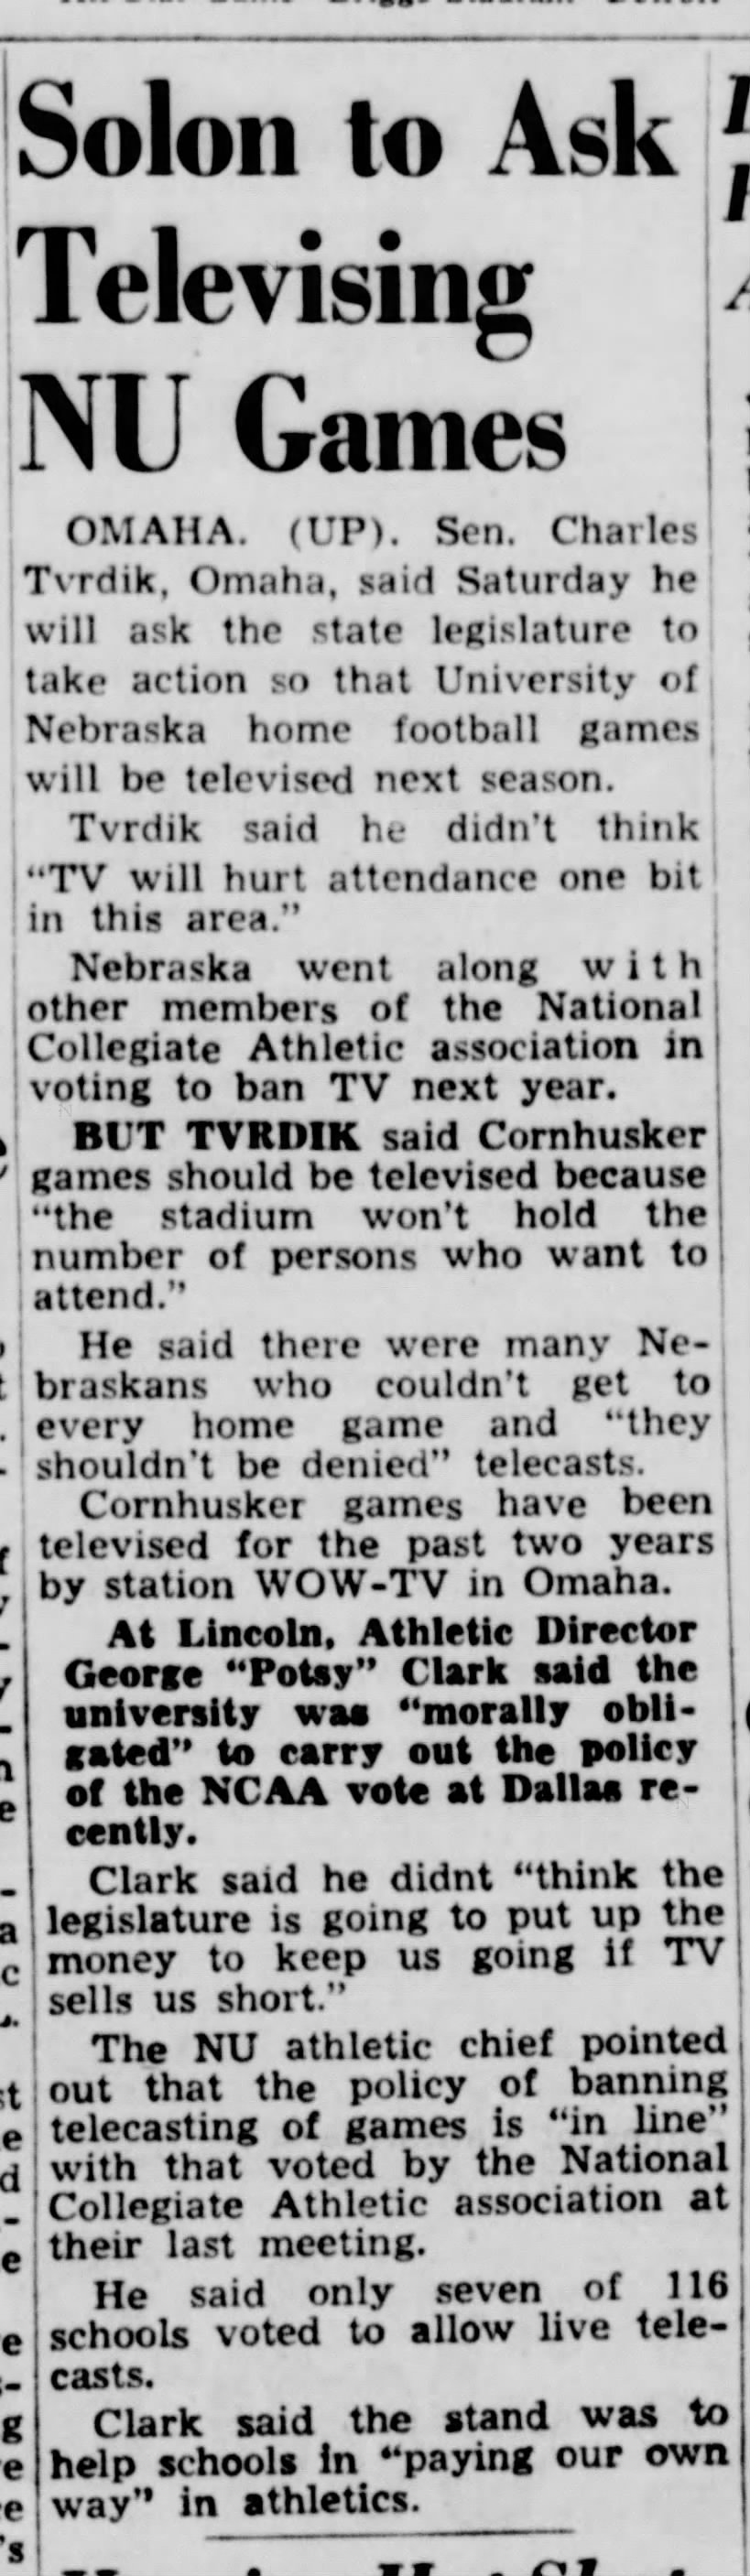 1951 Nebraska football television issue